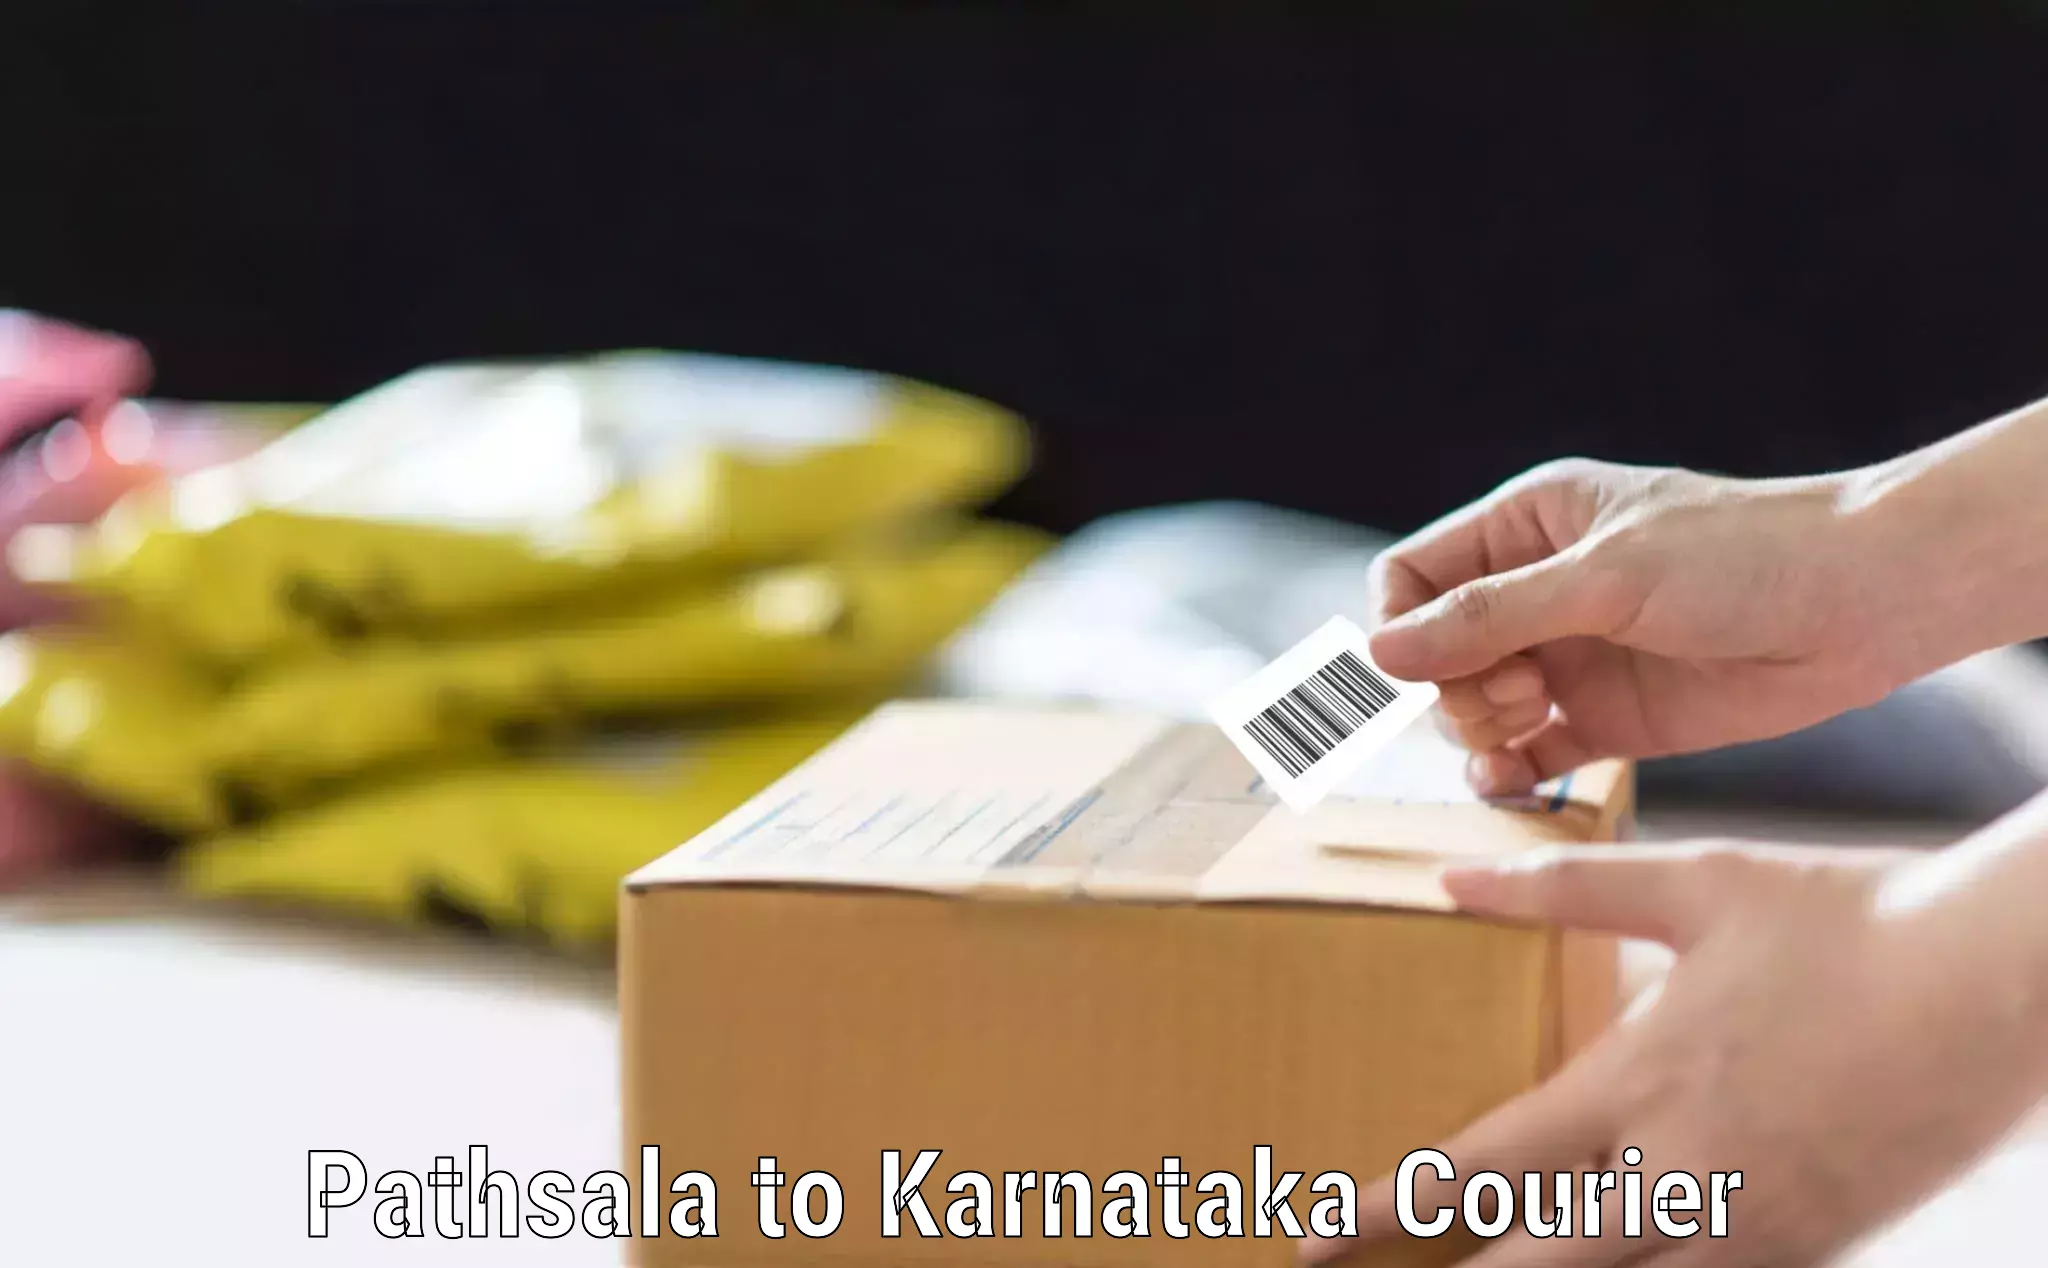 Reliable luggage courier Pathsala to Karnataka